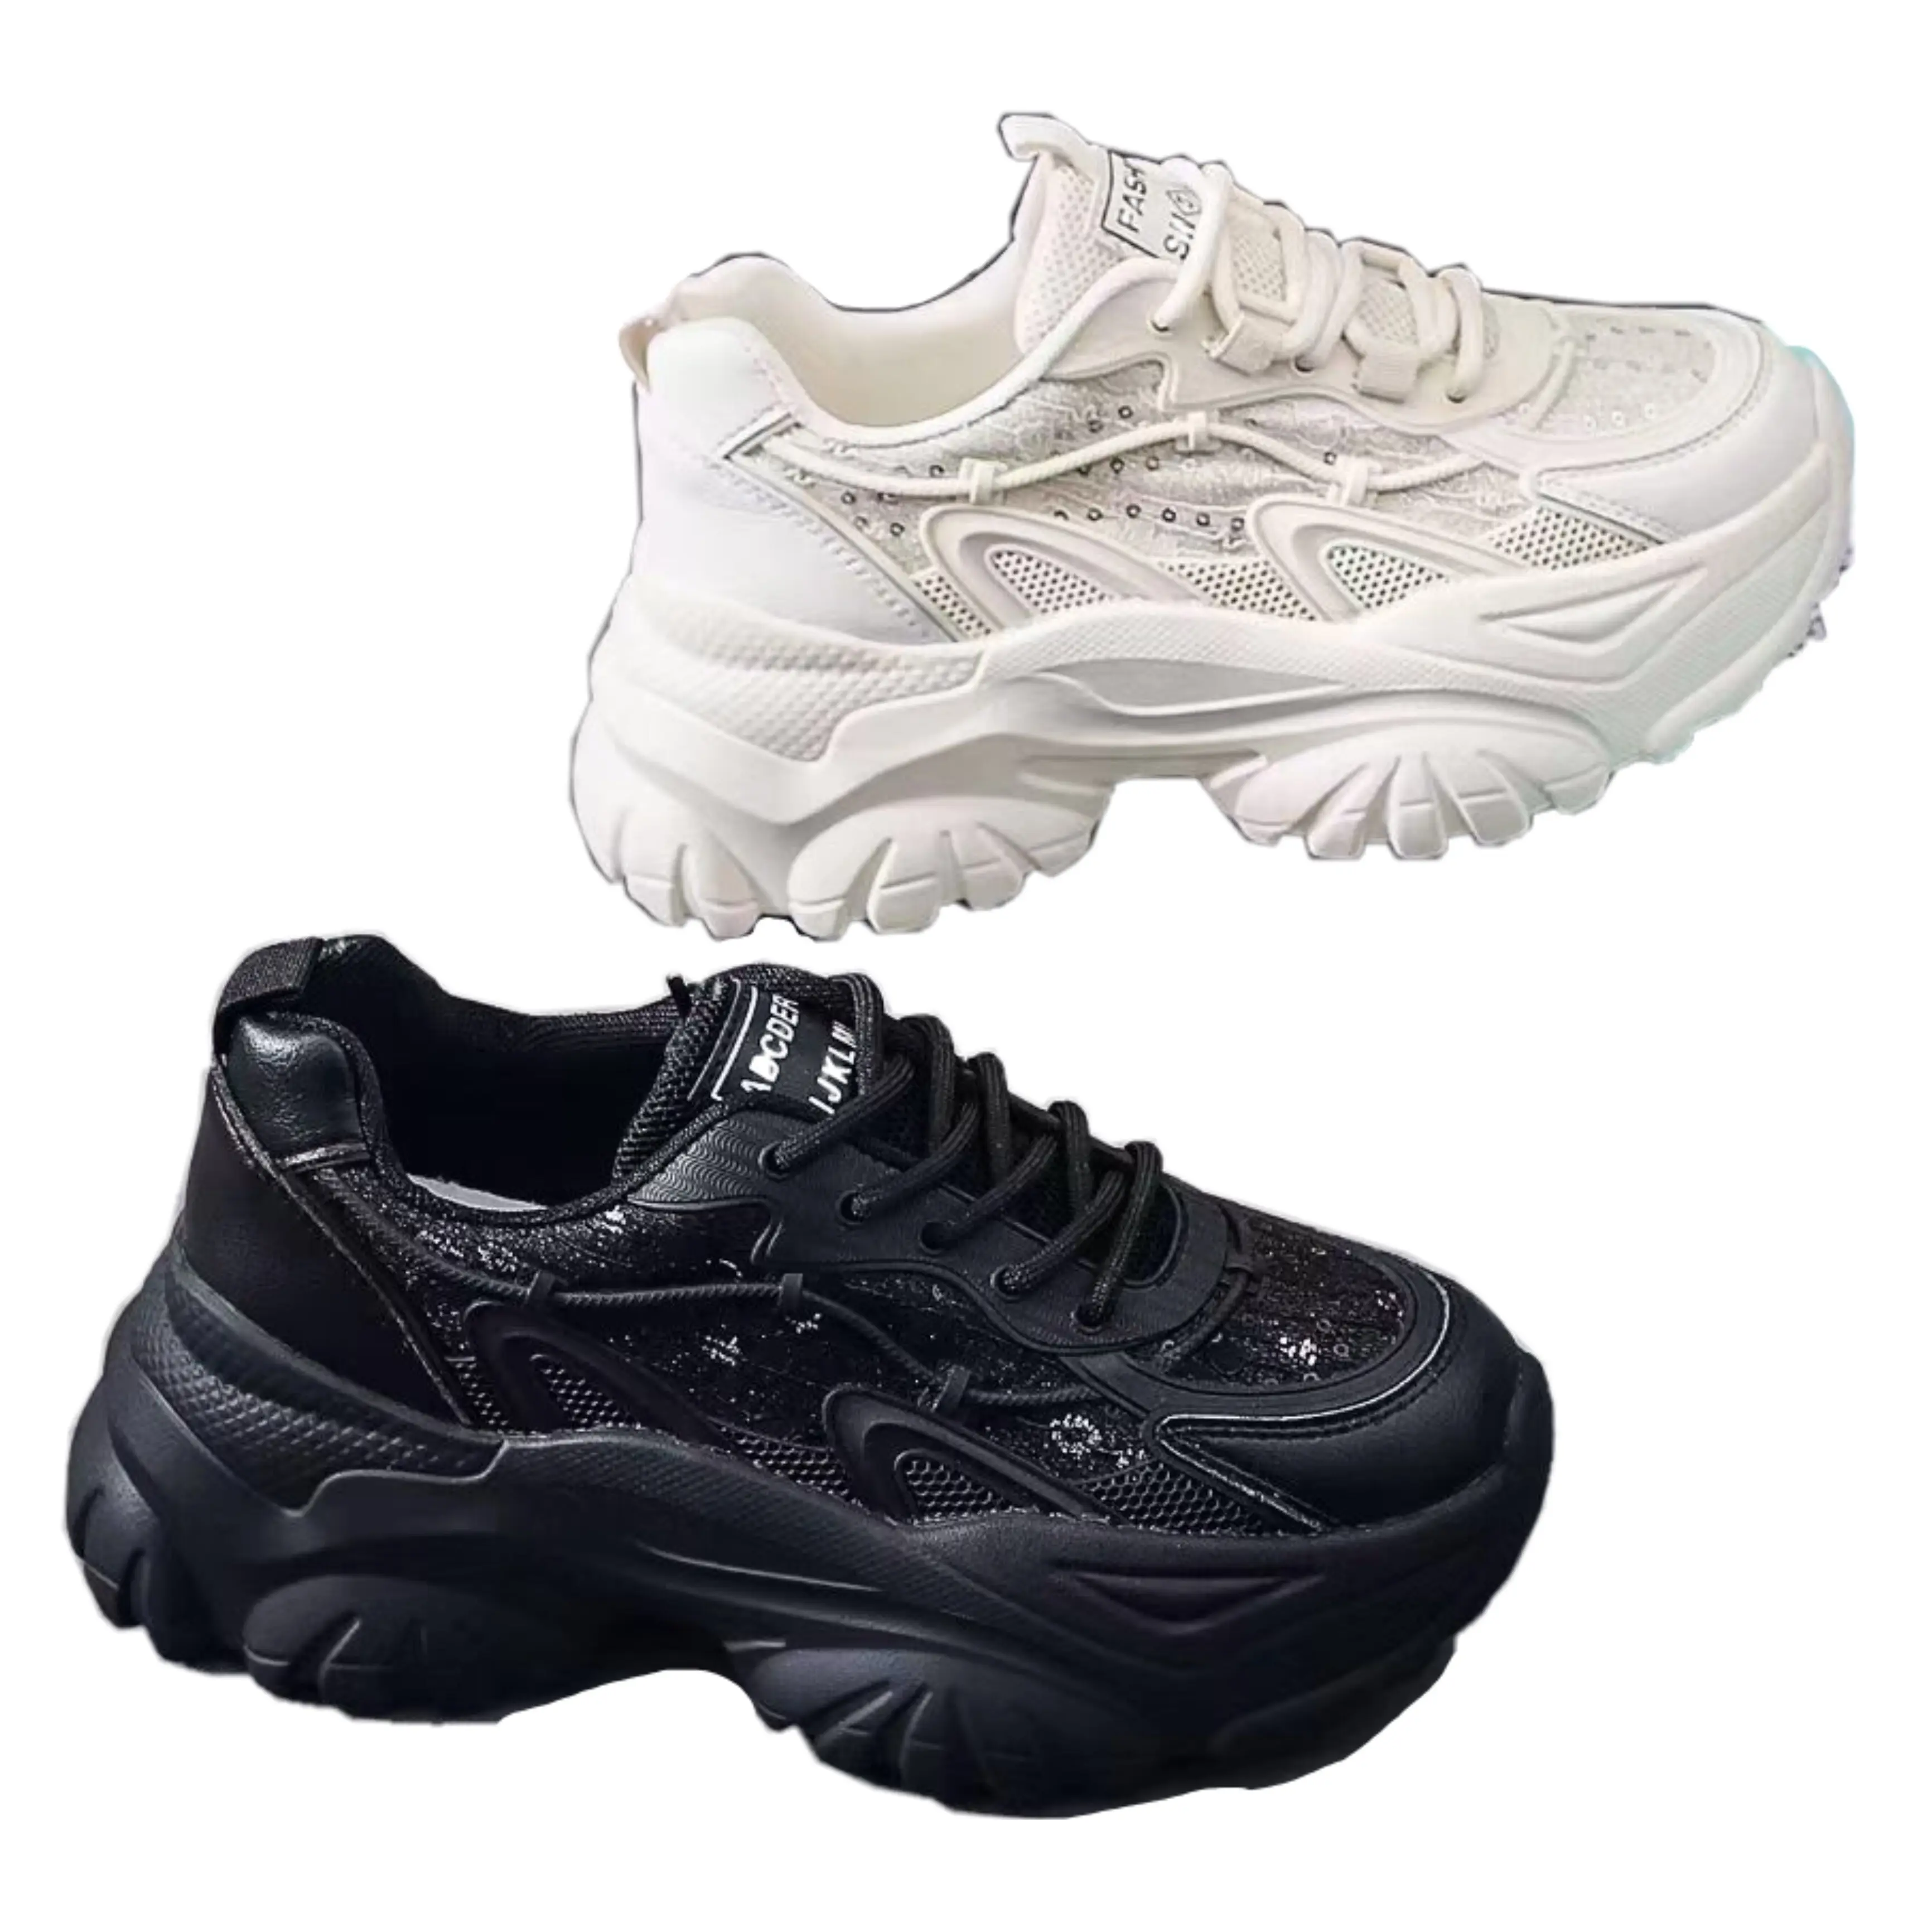 Низкая цена, удобные кроссовки на шнуровке, Модная белая спортивная обувь, женская фабричная оптовая продажа, женская обувь